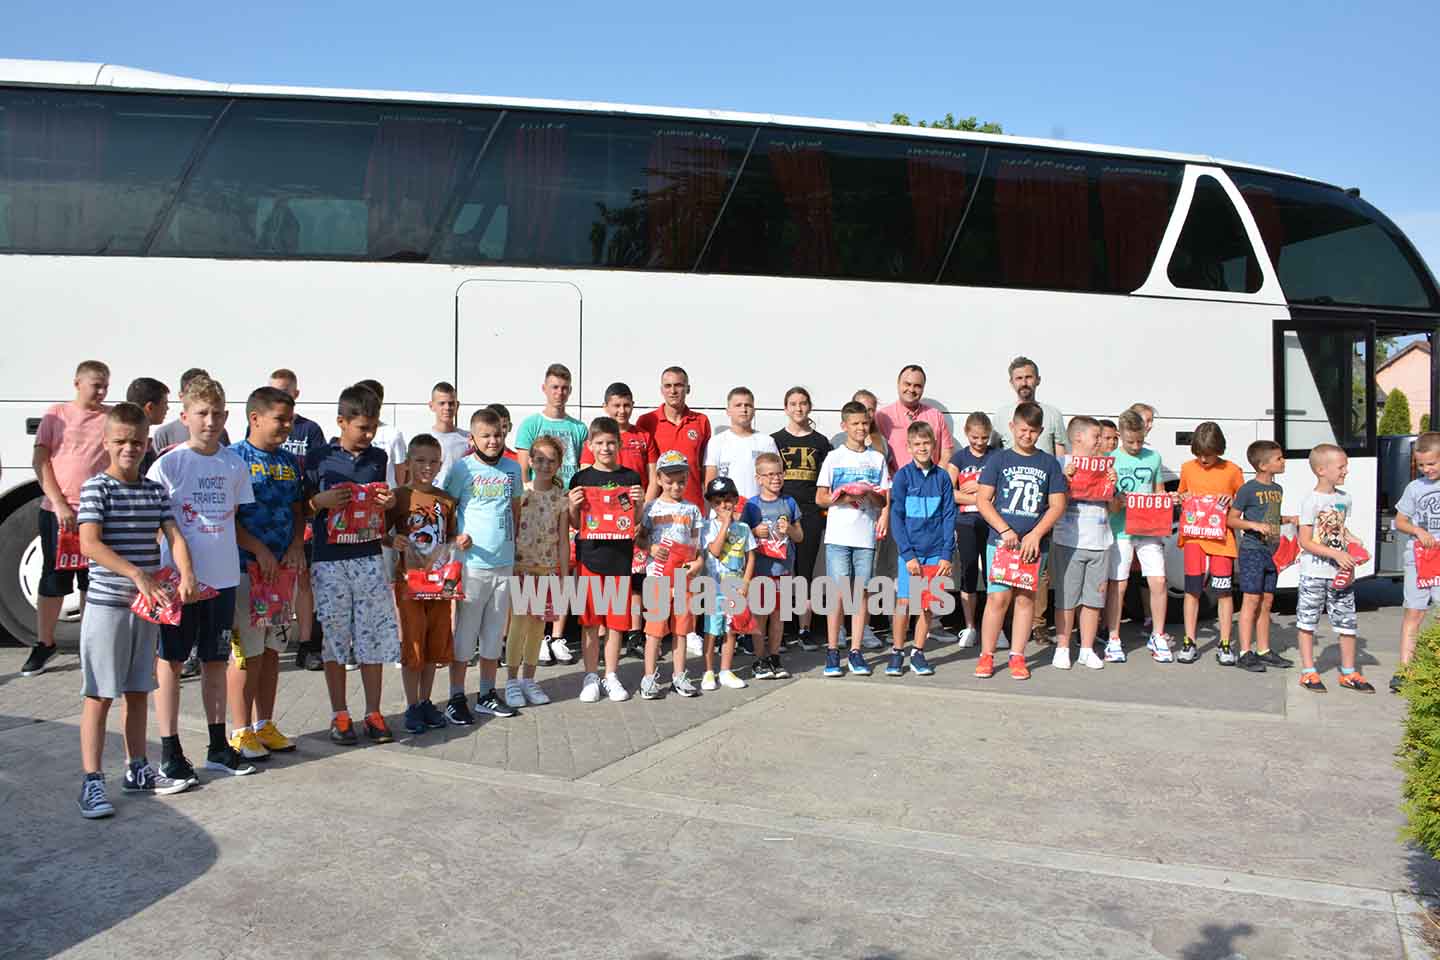 Škola fudbala Spartanac: Osam dana na letnjem kampu u Soko Banji (video)